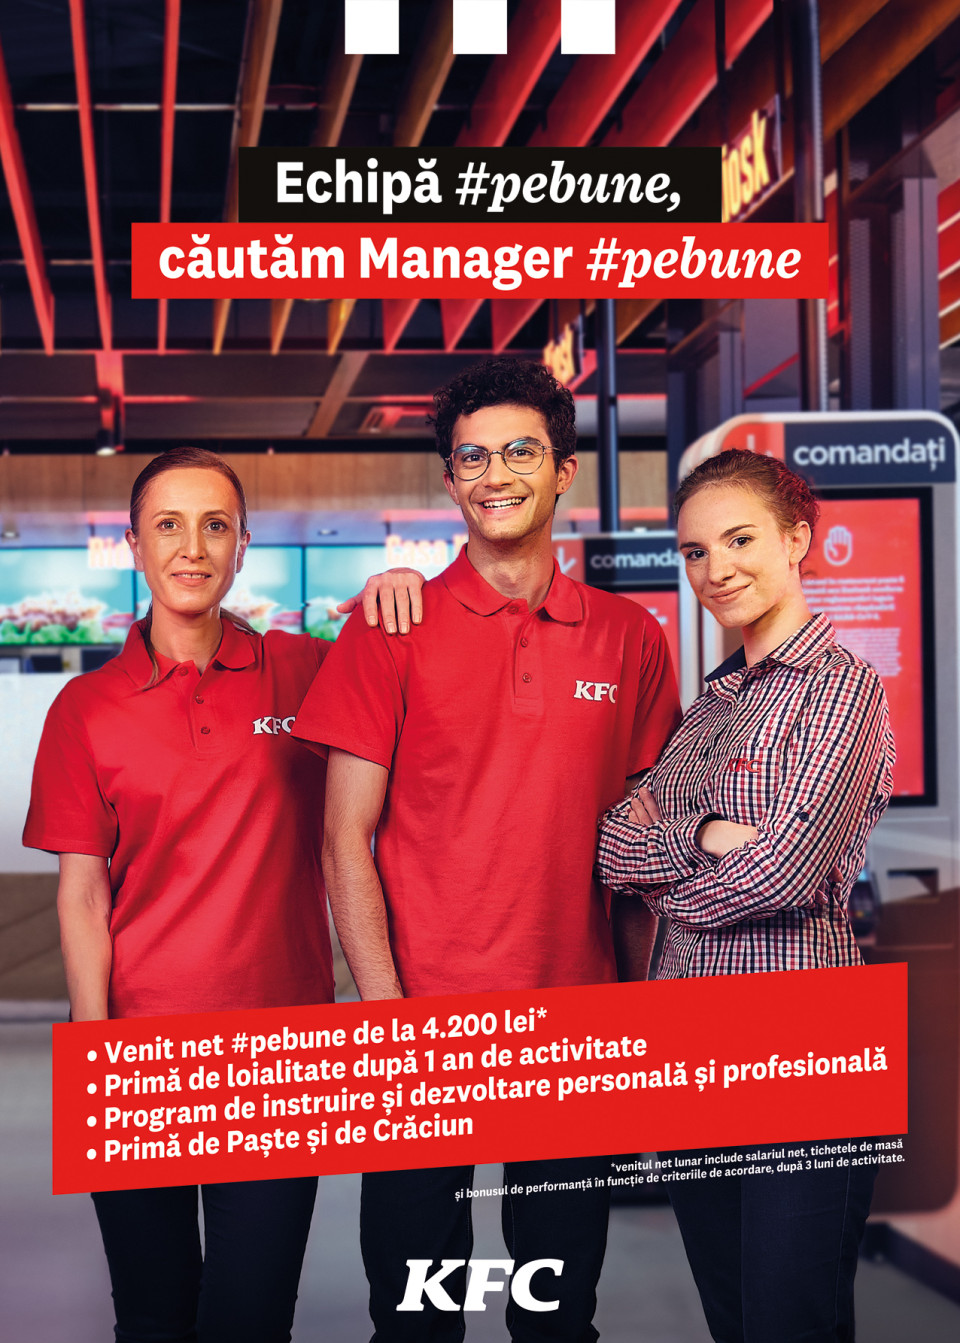 KFC vine in Sinaia! Cautam manager de tura #pebune!